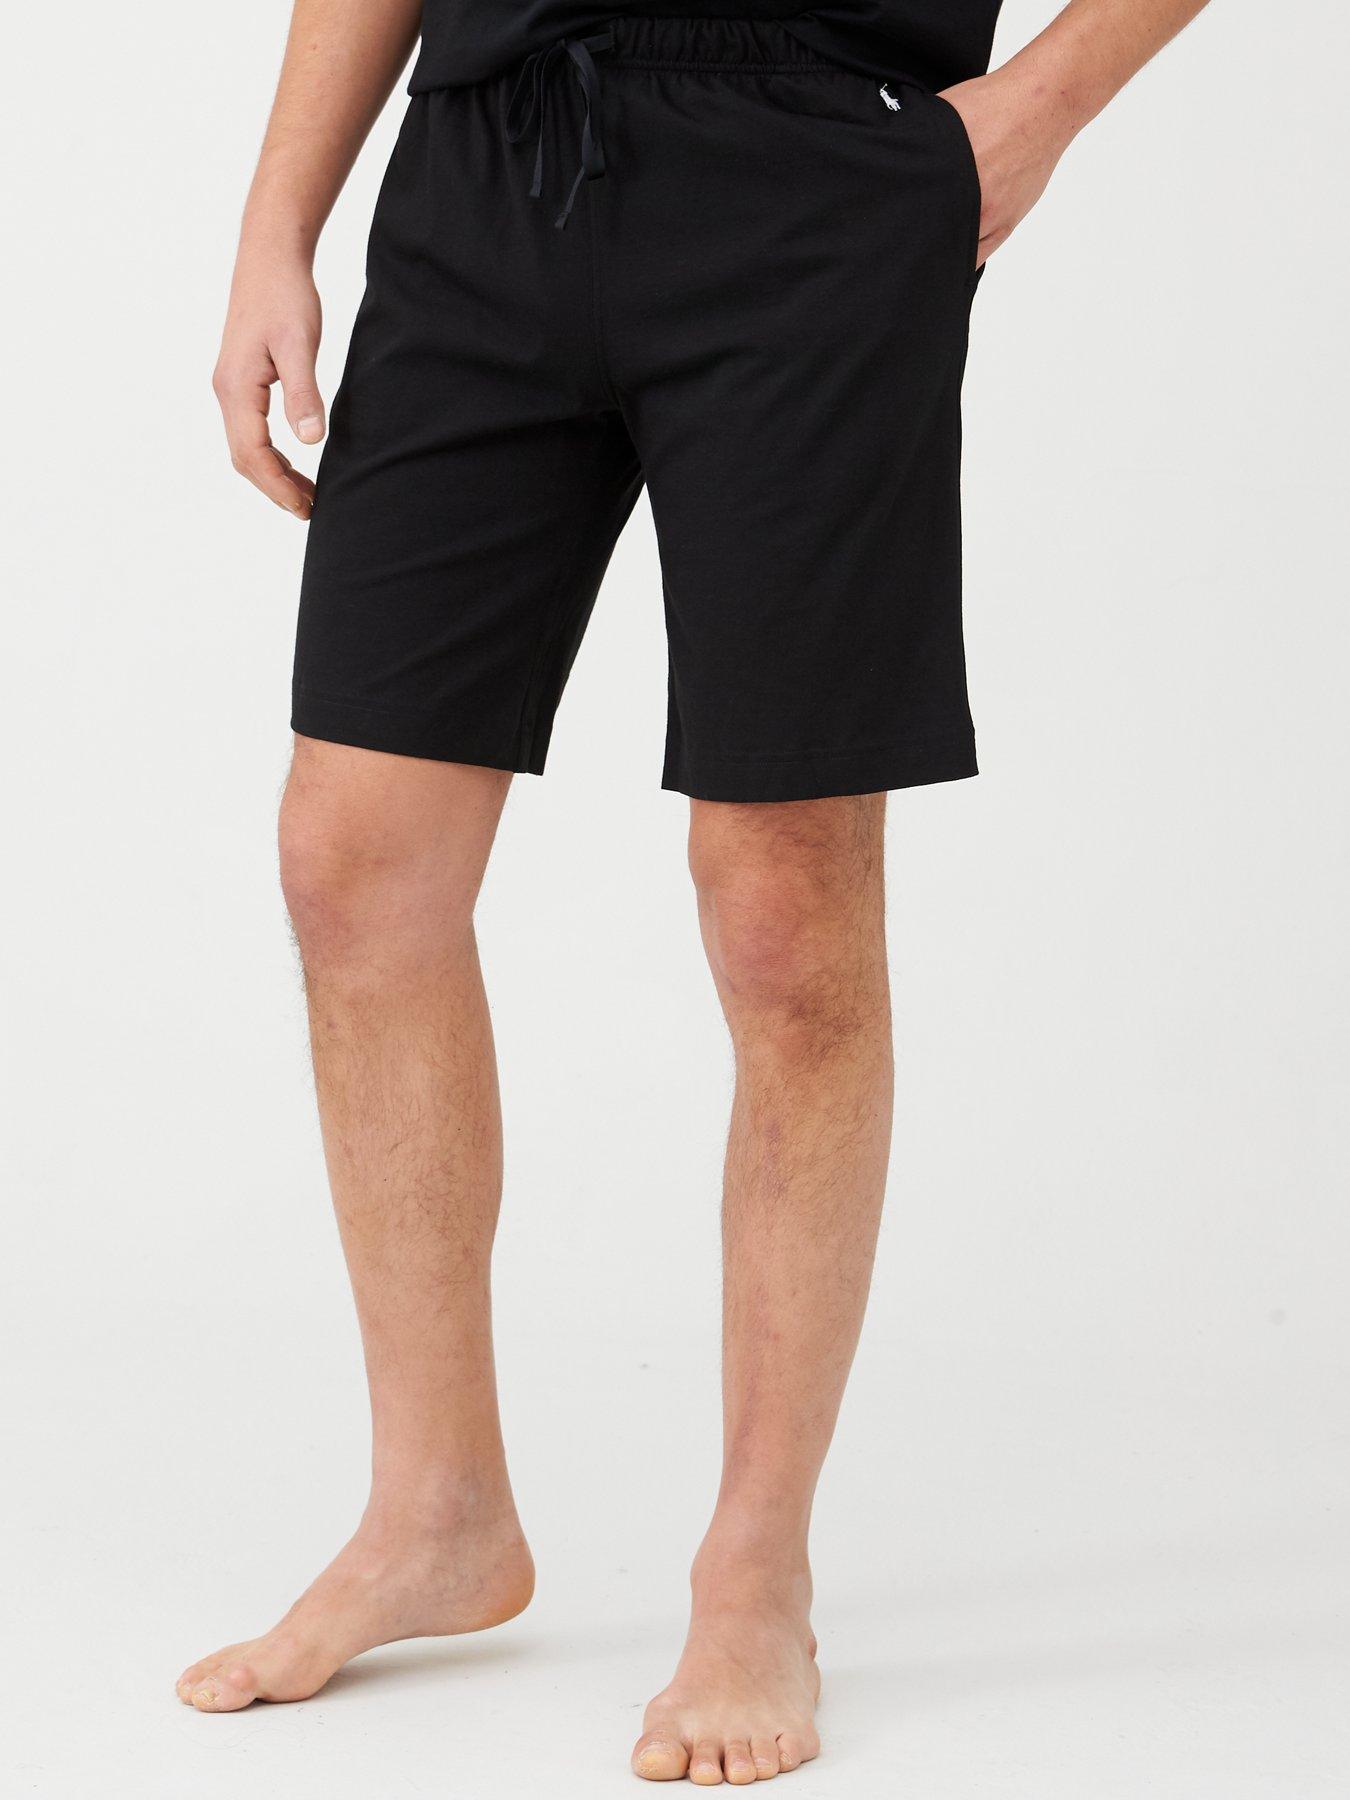 Top 43+ imagen black ralph lauren shorts